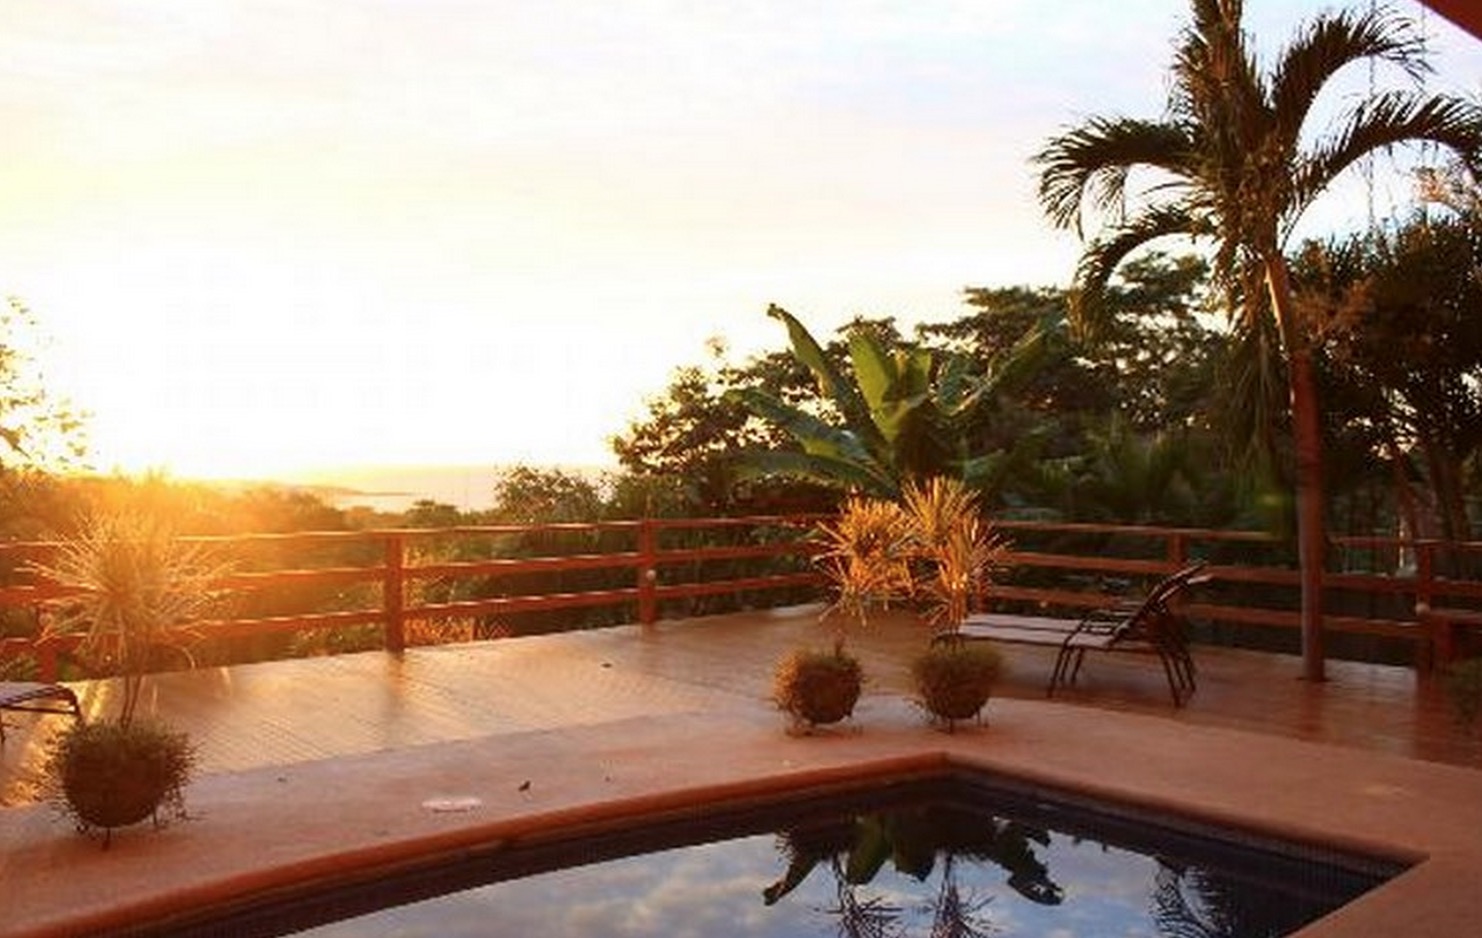 Villa Mirador - ocean view home in Playa Tamarindo